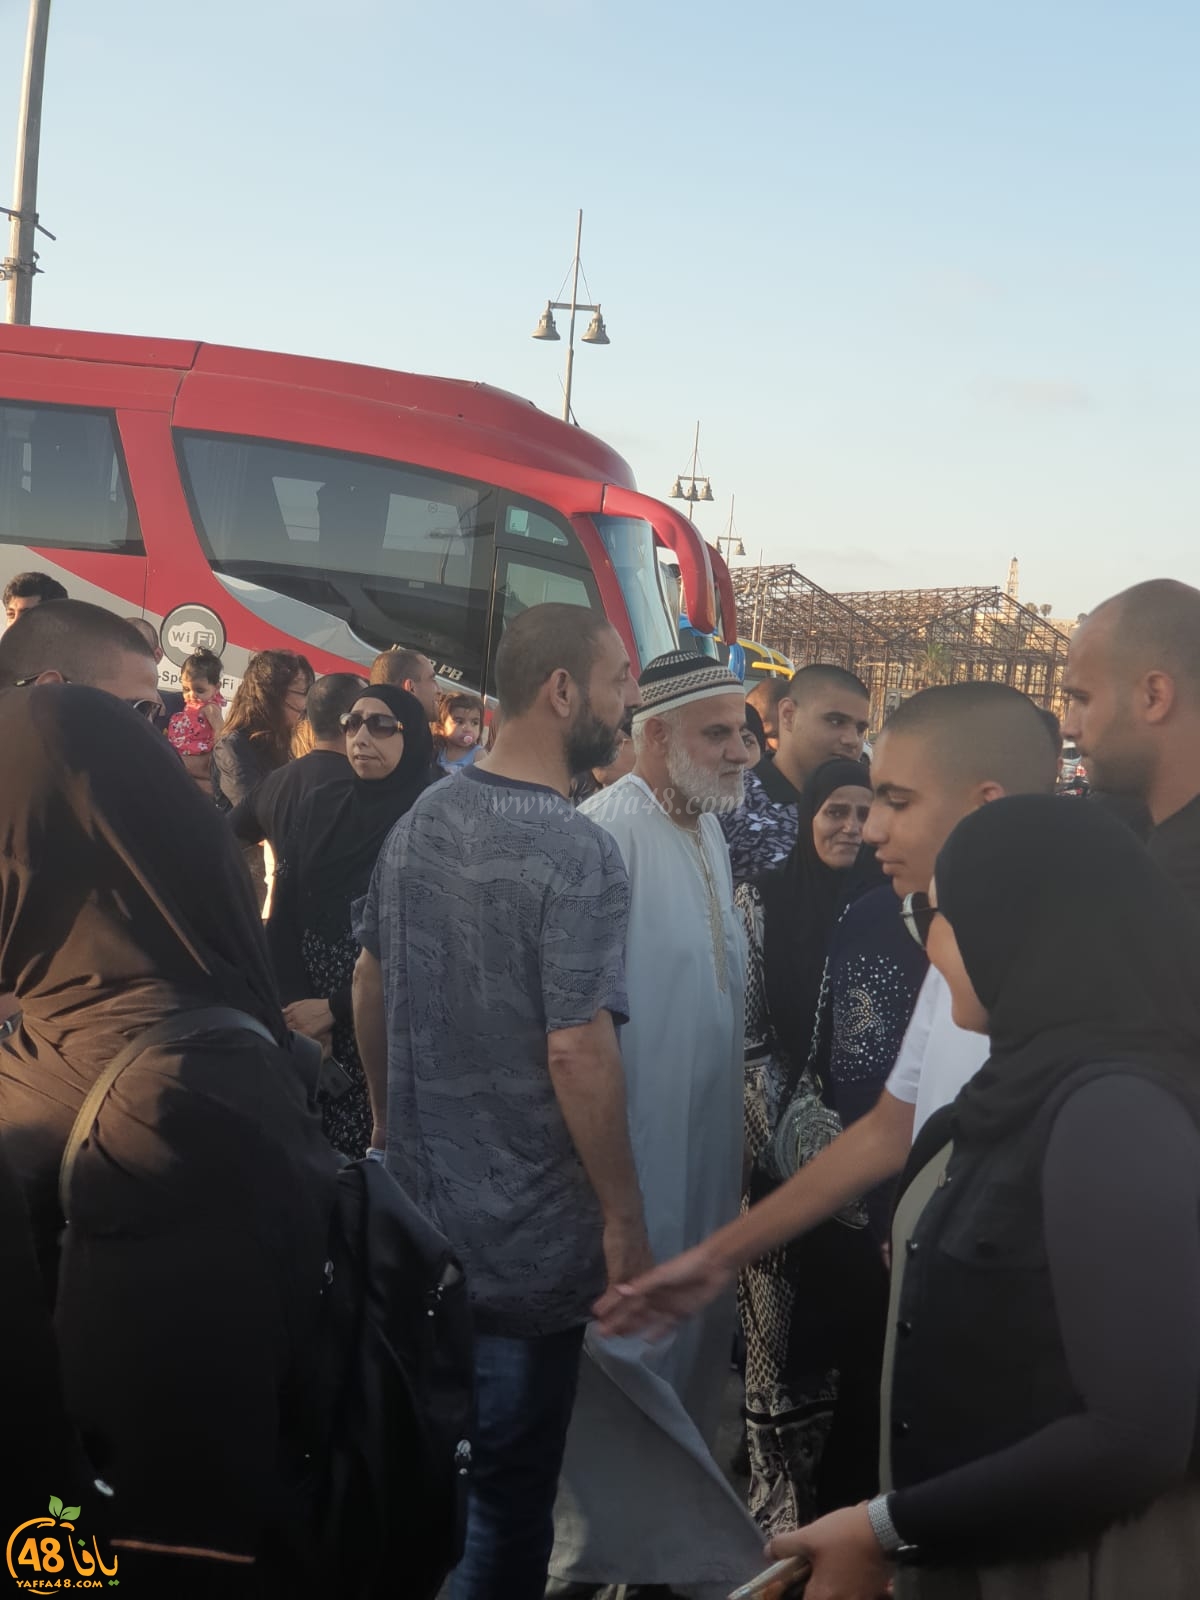  بالصور: انطلاق حافلة الفوج الثاني من حجاج مدينة يافا الى الديار الحجازية 